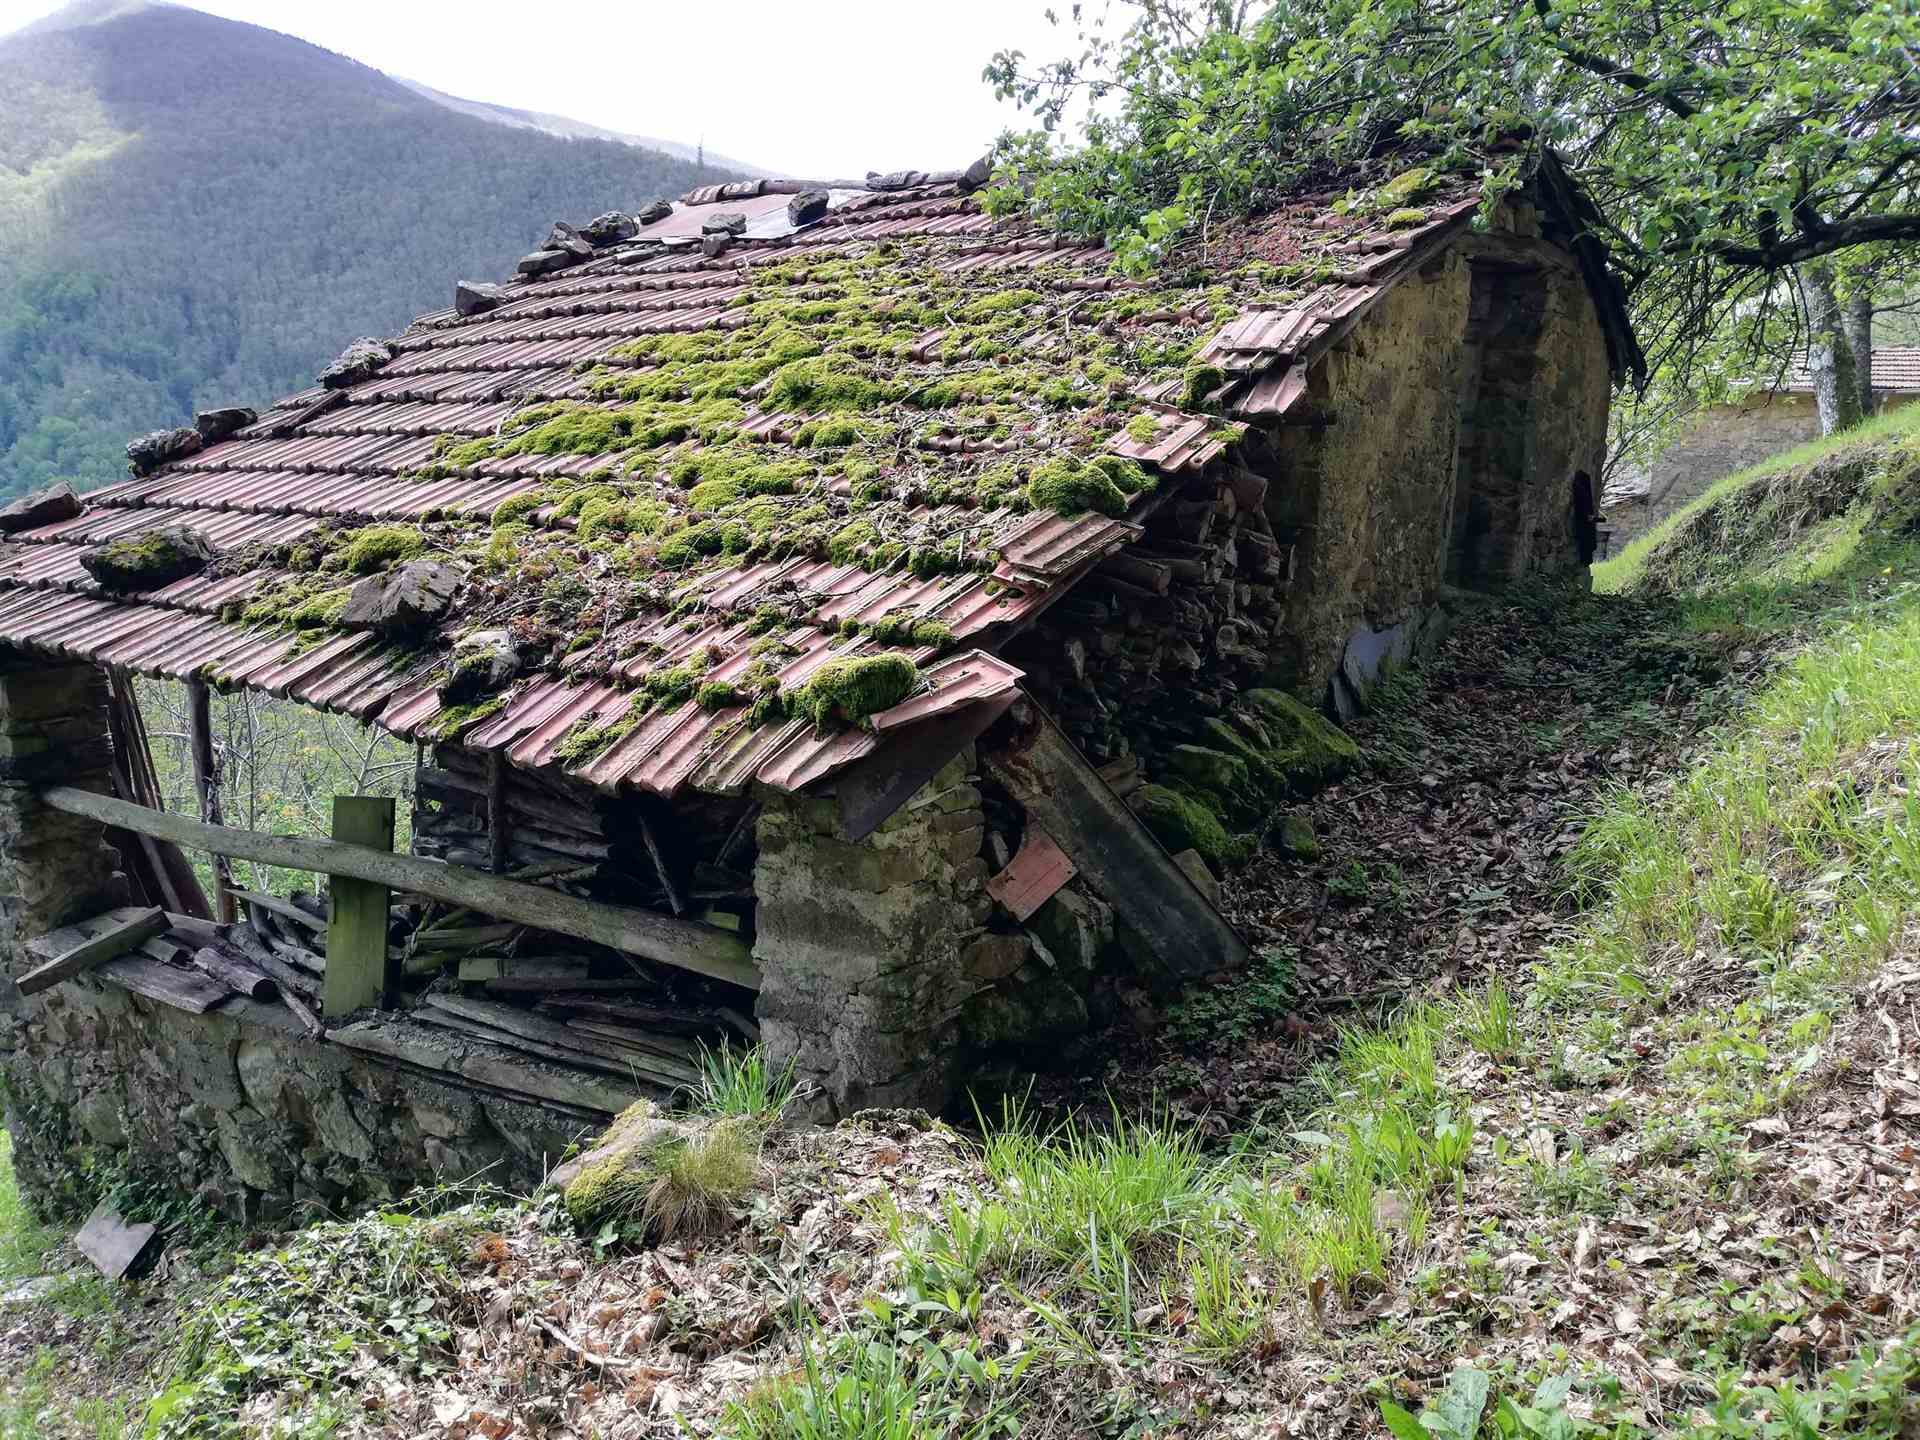 Gli annessi/capanna - The outbuildings / hut